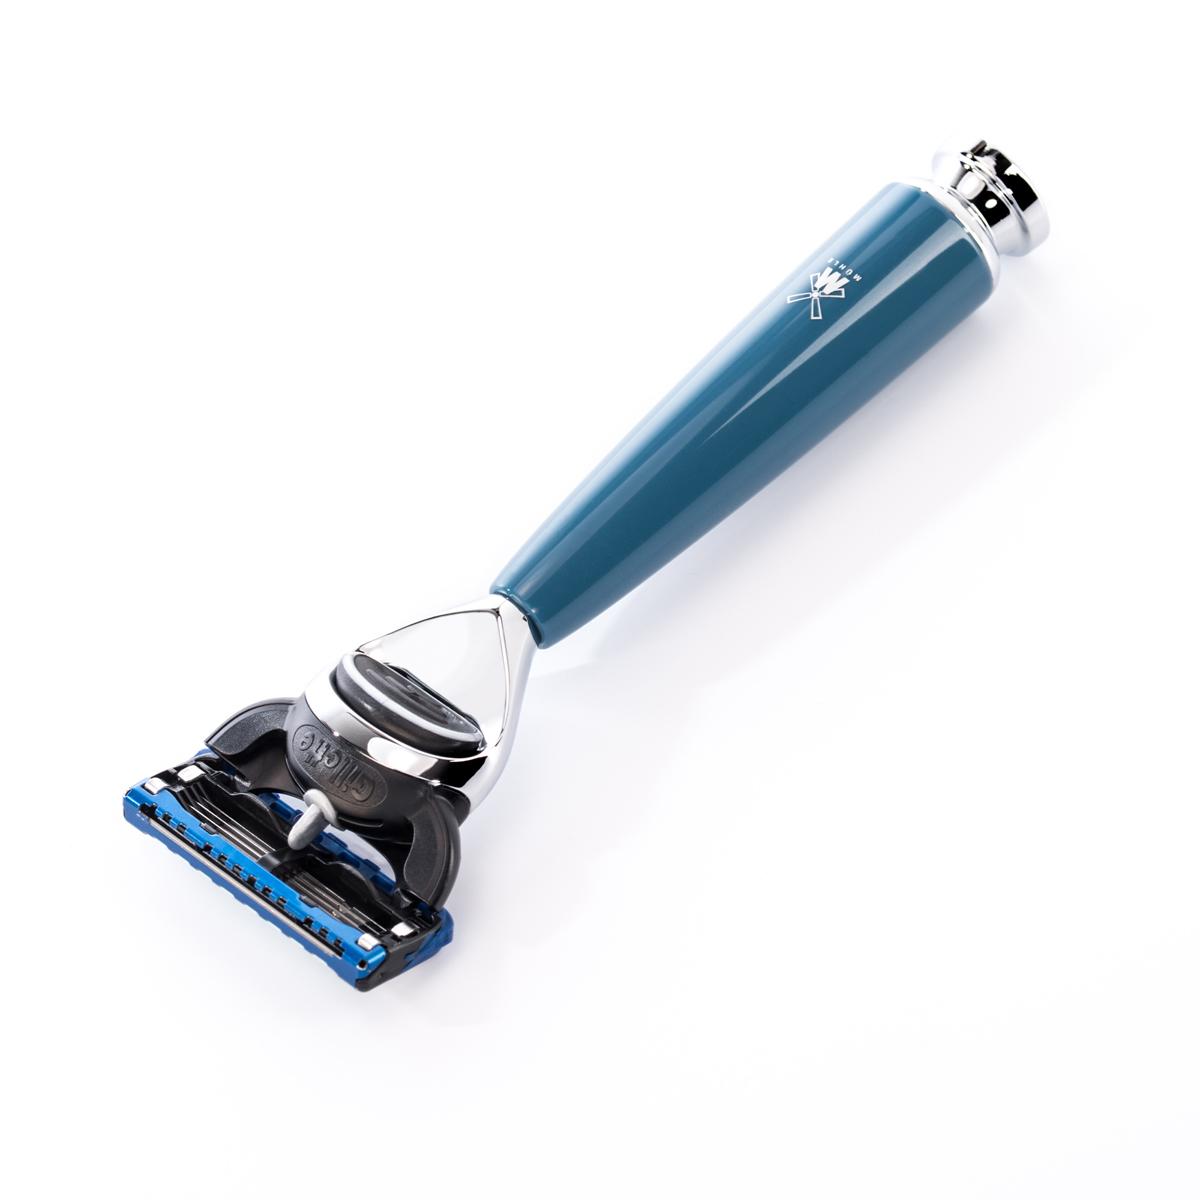 Maquinilla de afeitar Mühle rytmo azul petróleo fusion